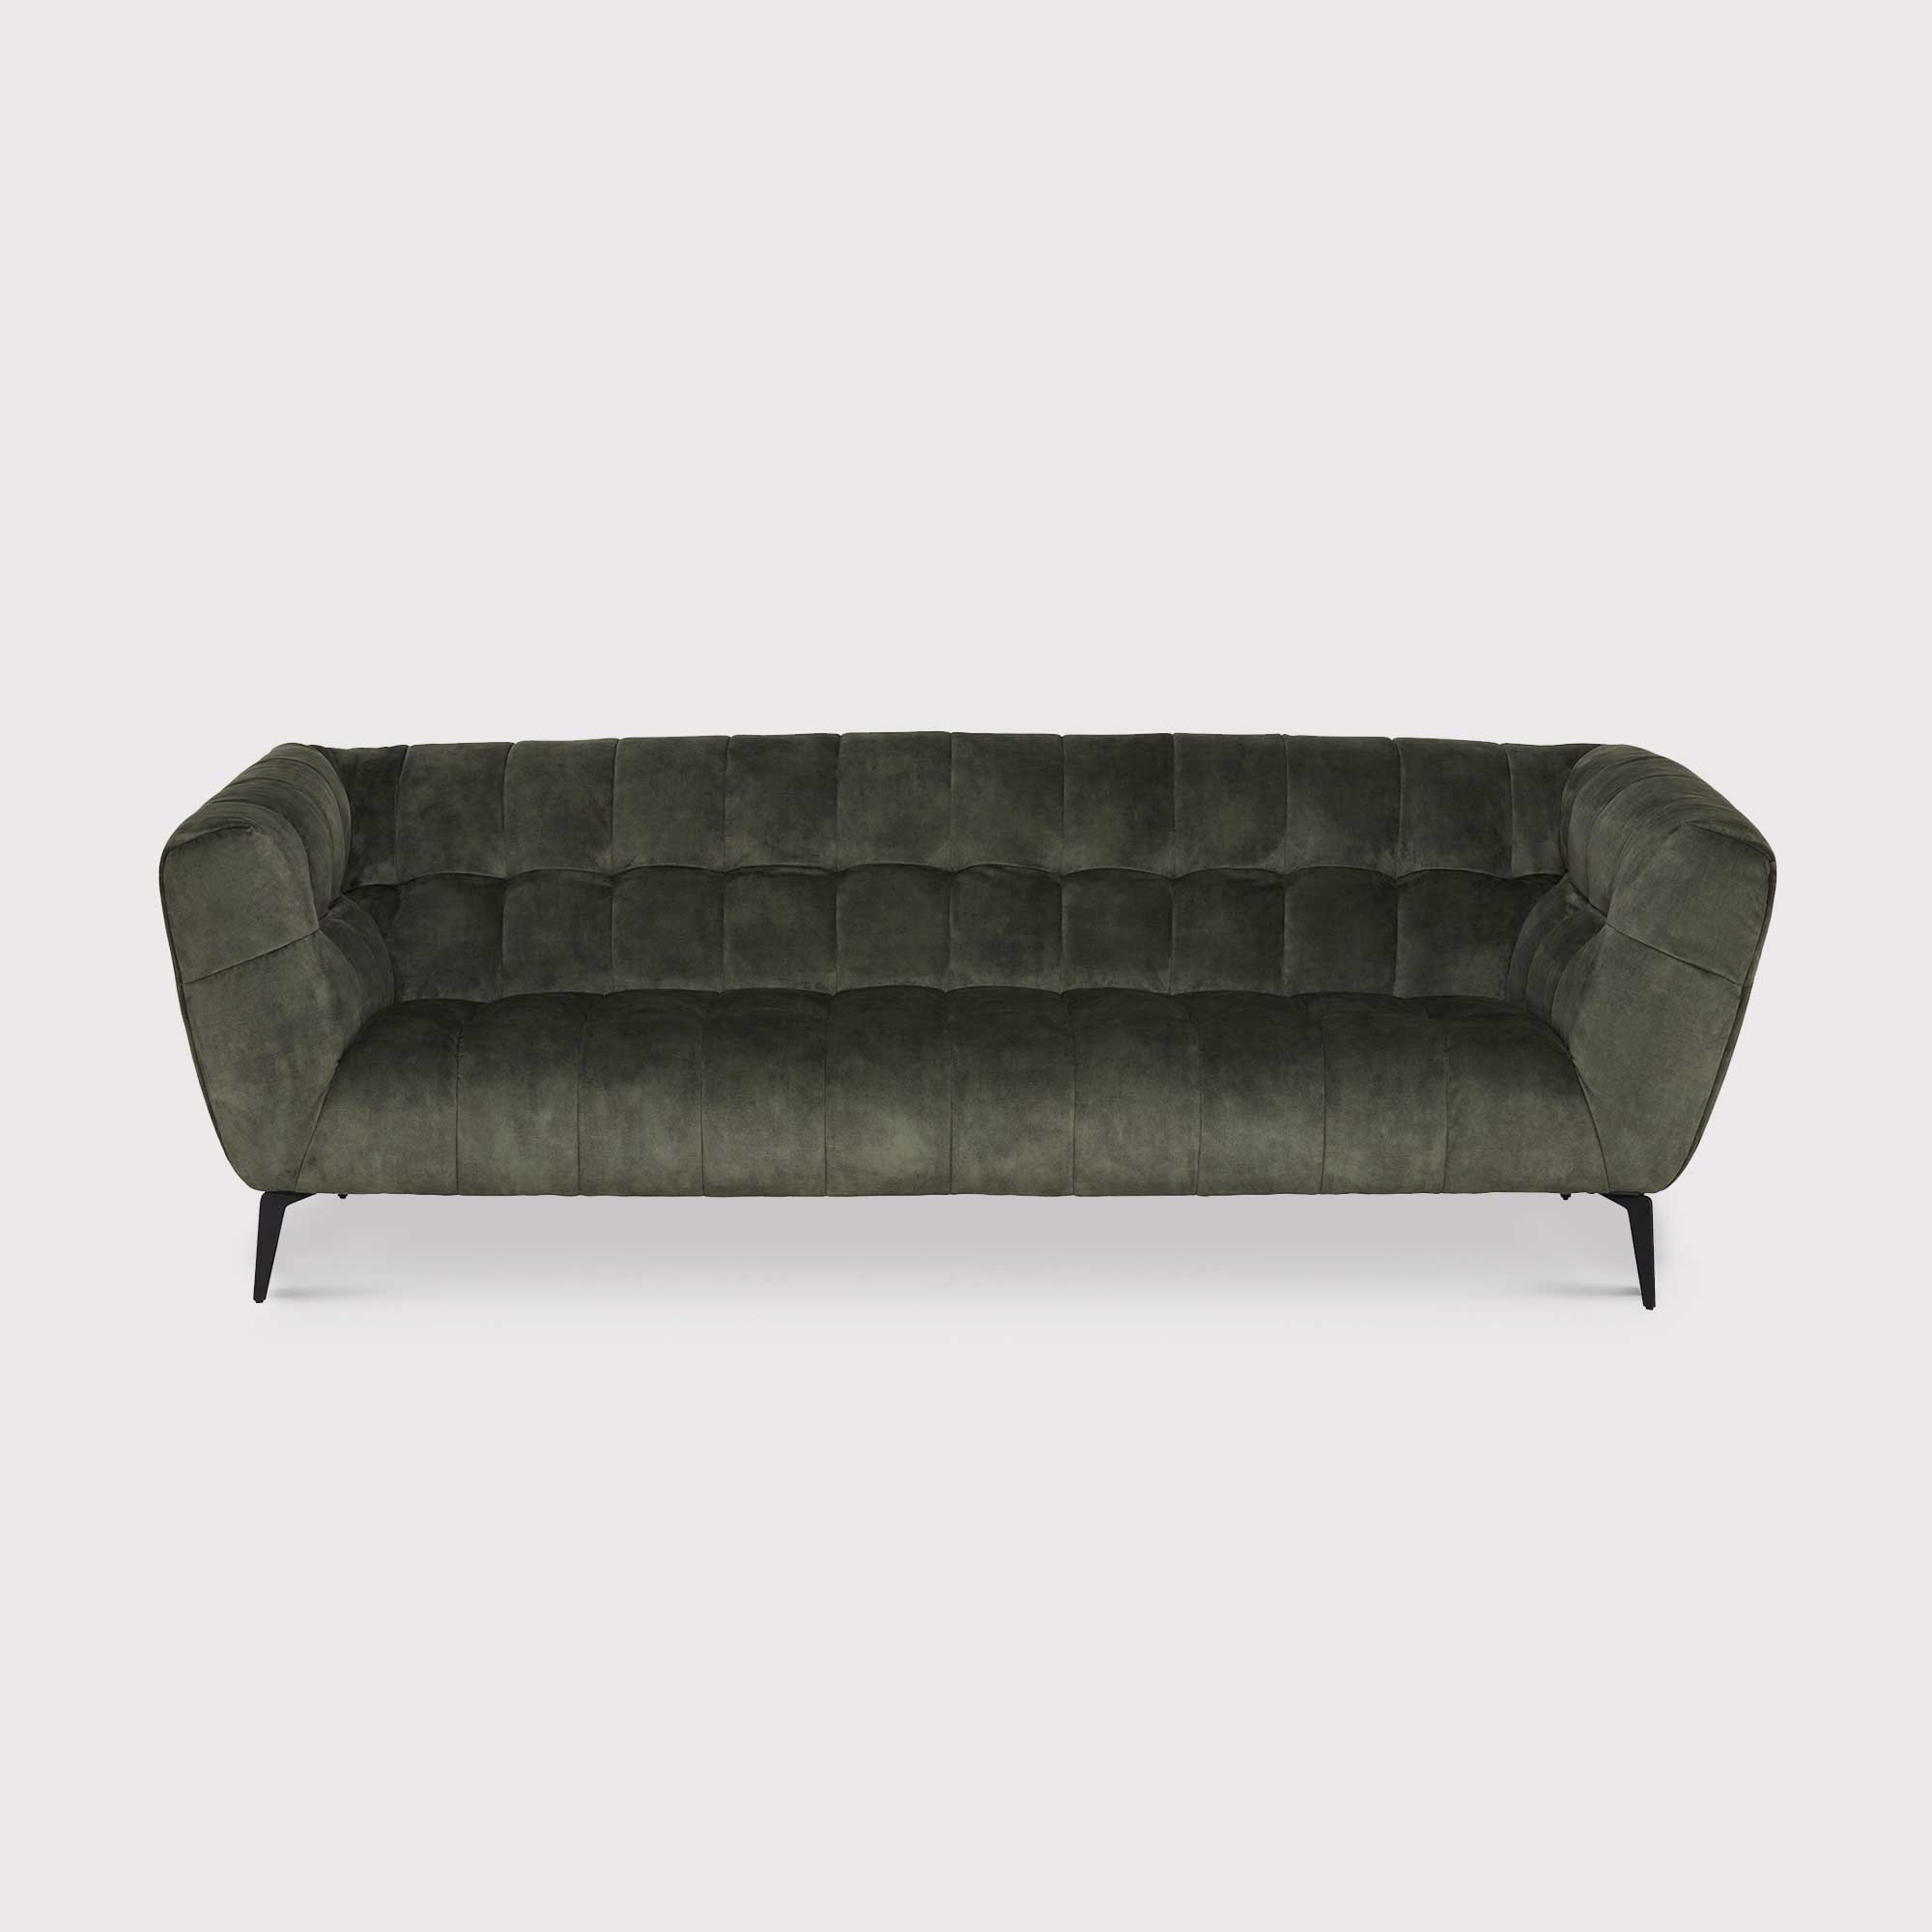 Azalea 3 Seater Sofa, Green Fabric | Barker & Stonehouse